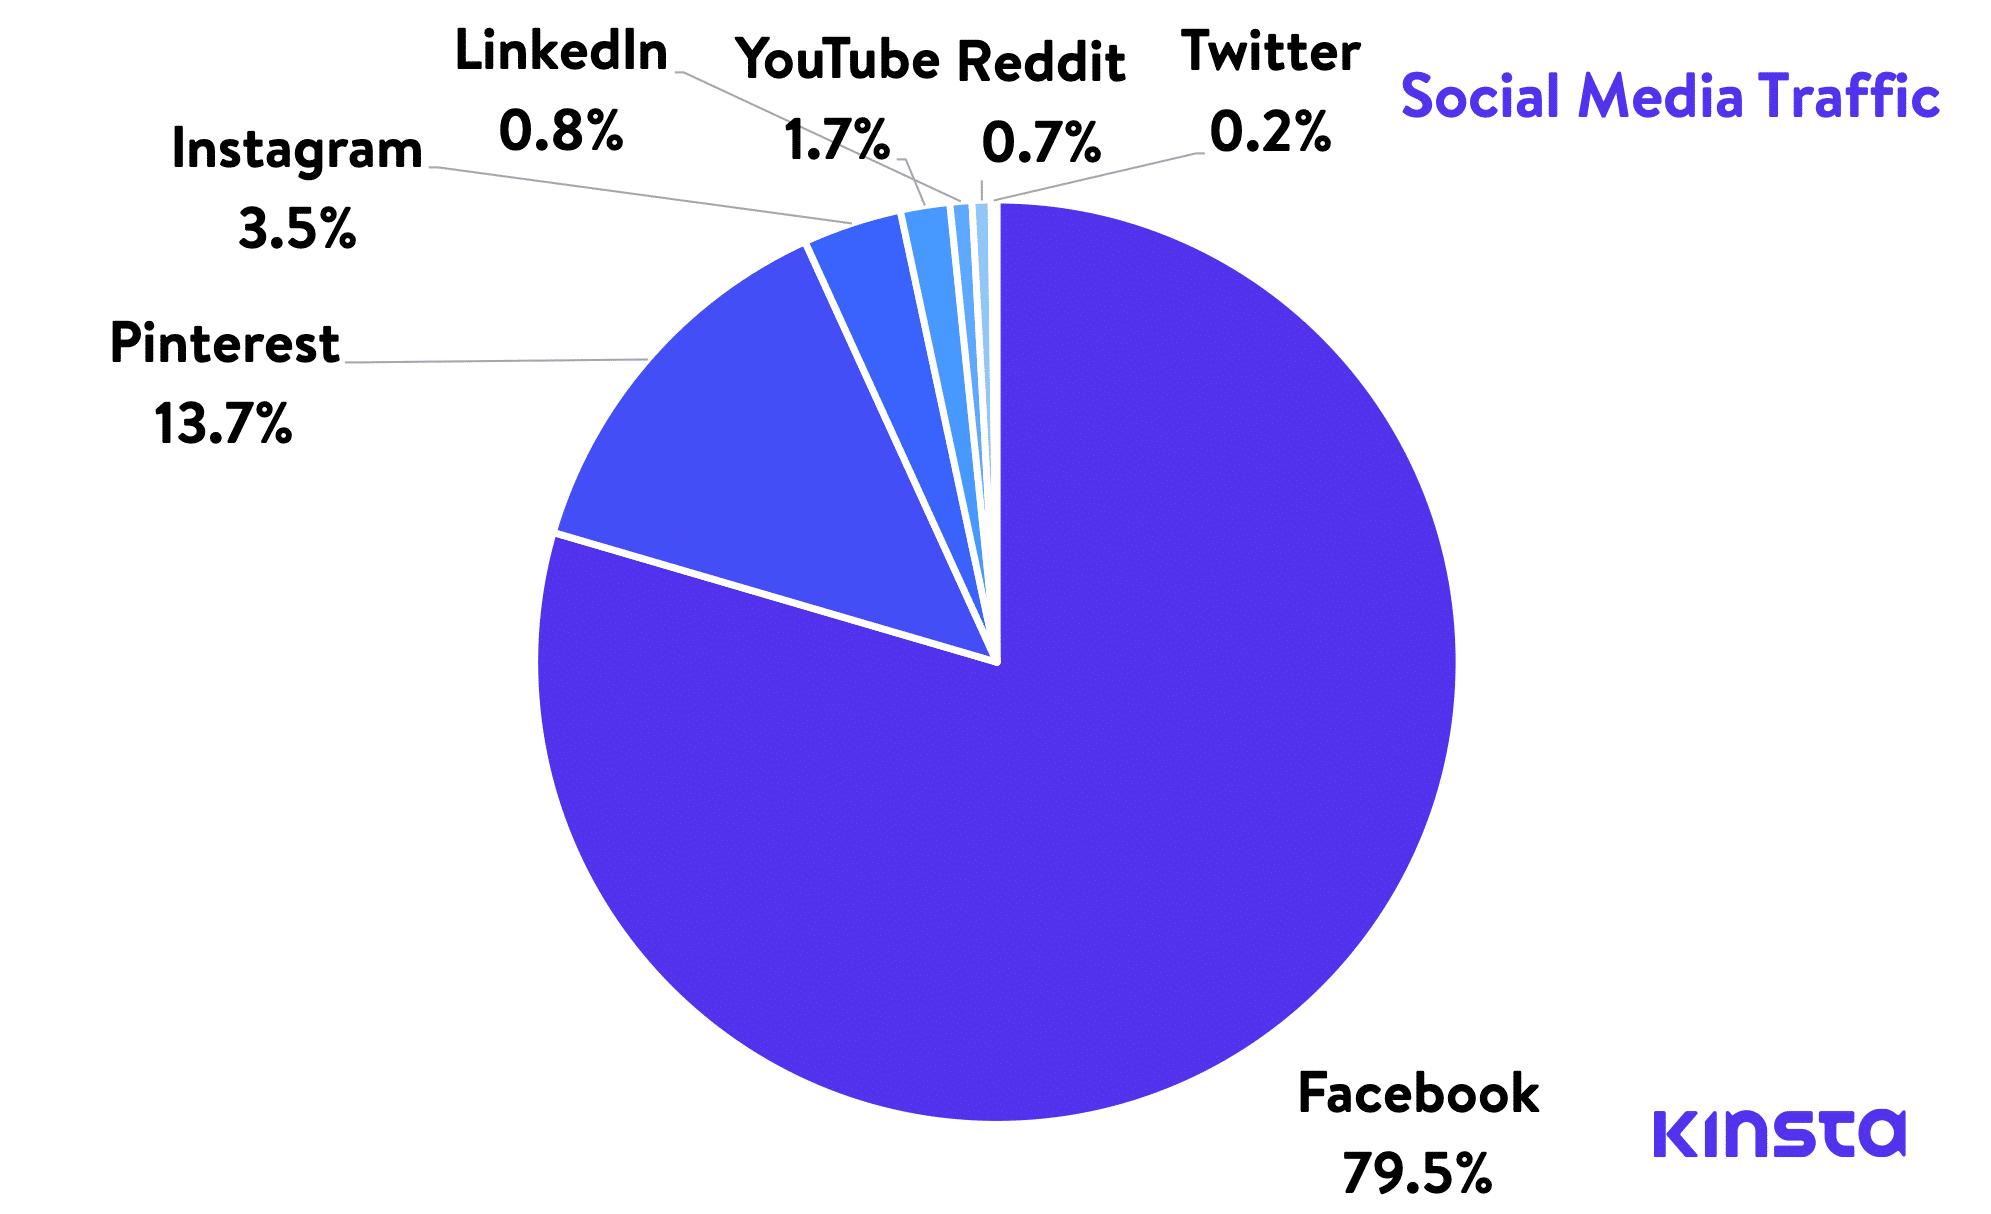 Social media traffic